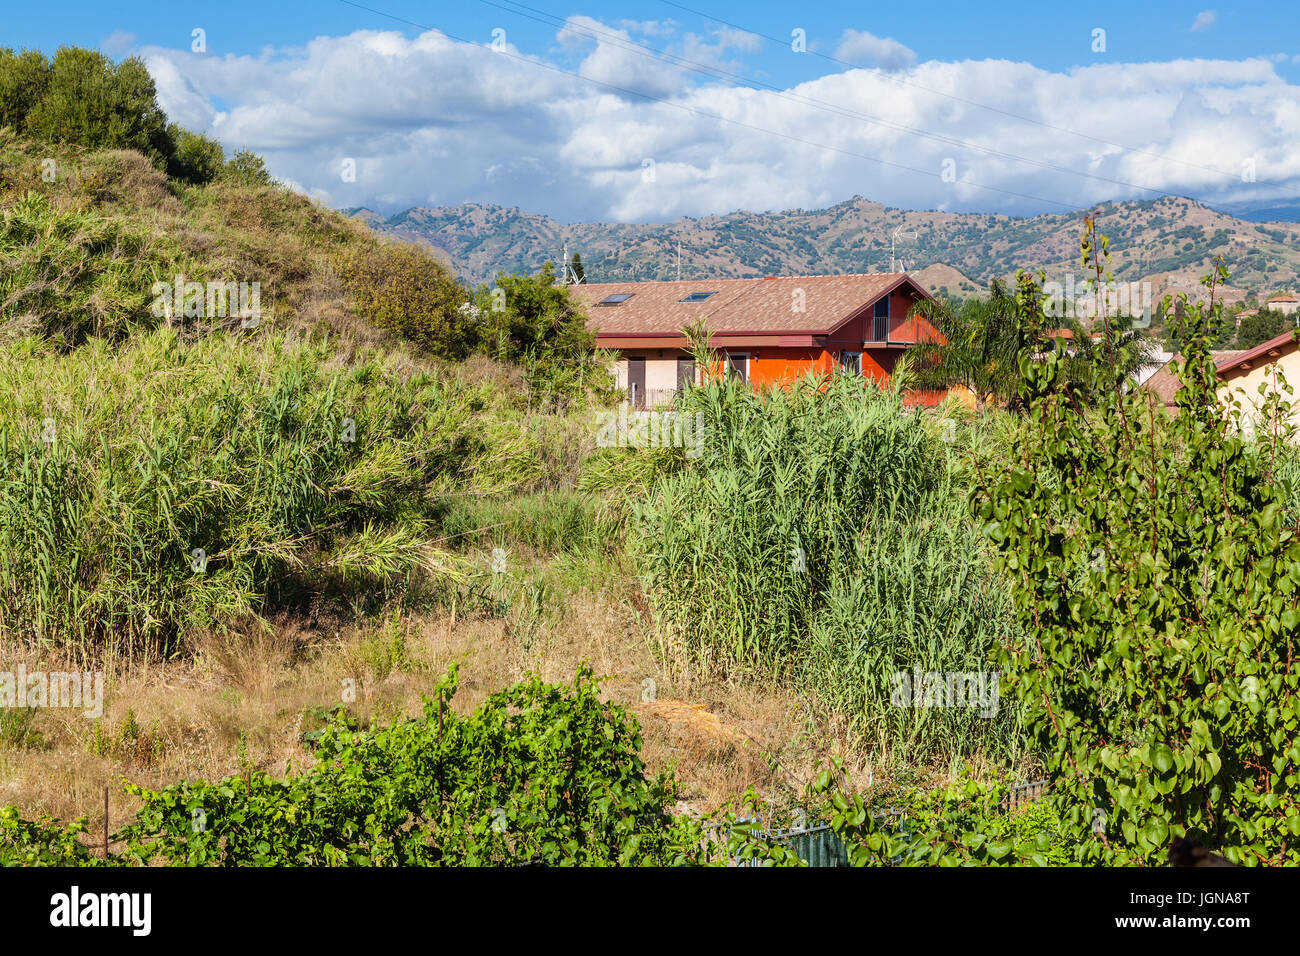 Reisen Sie nach Sizilien, Italien - Ferienhaus in verwilderten Garten in Giardini Naxos-Stadt im Sommer Stockfoto